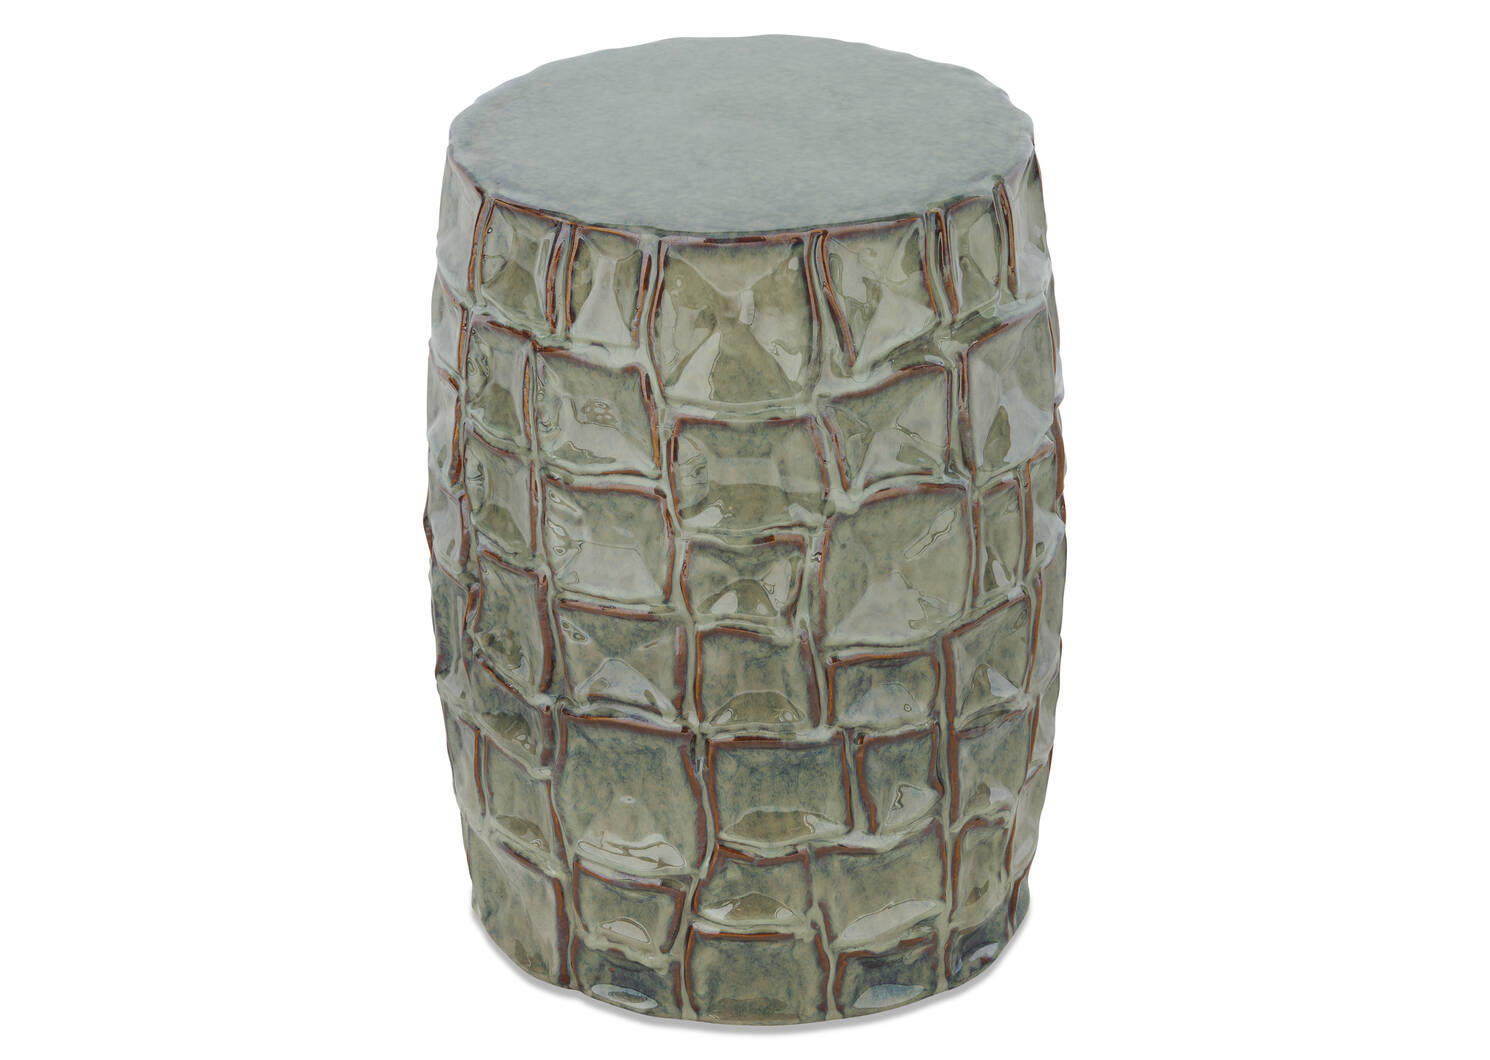 Hauser Ceramic Stool